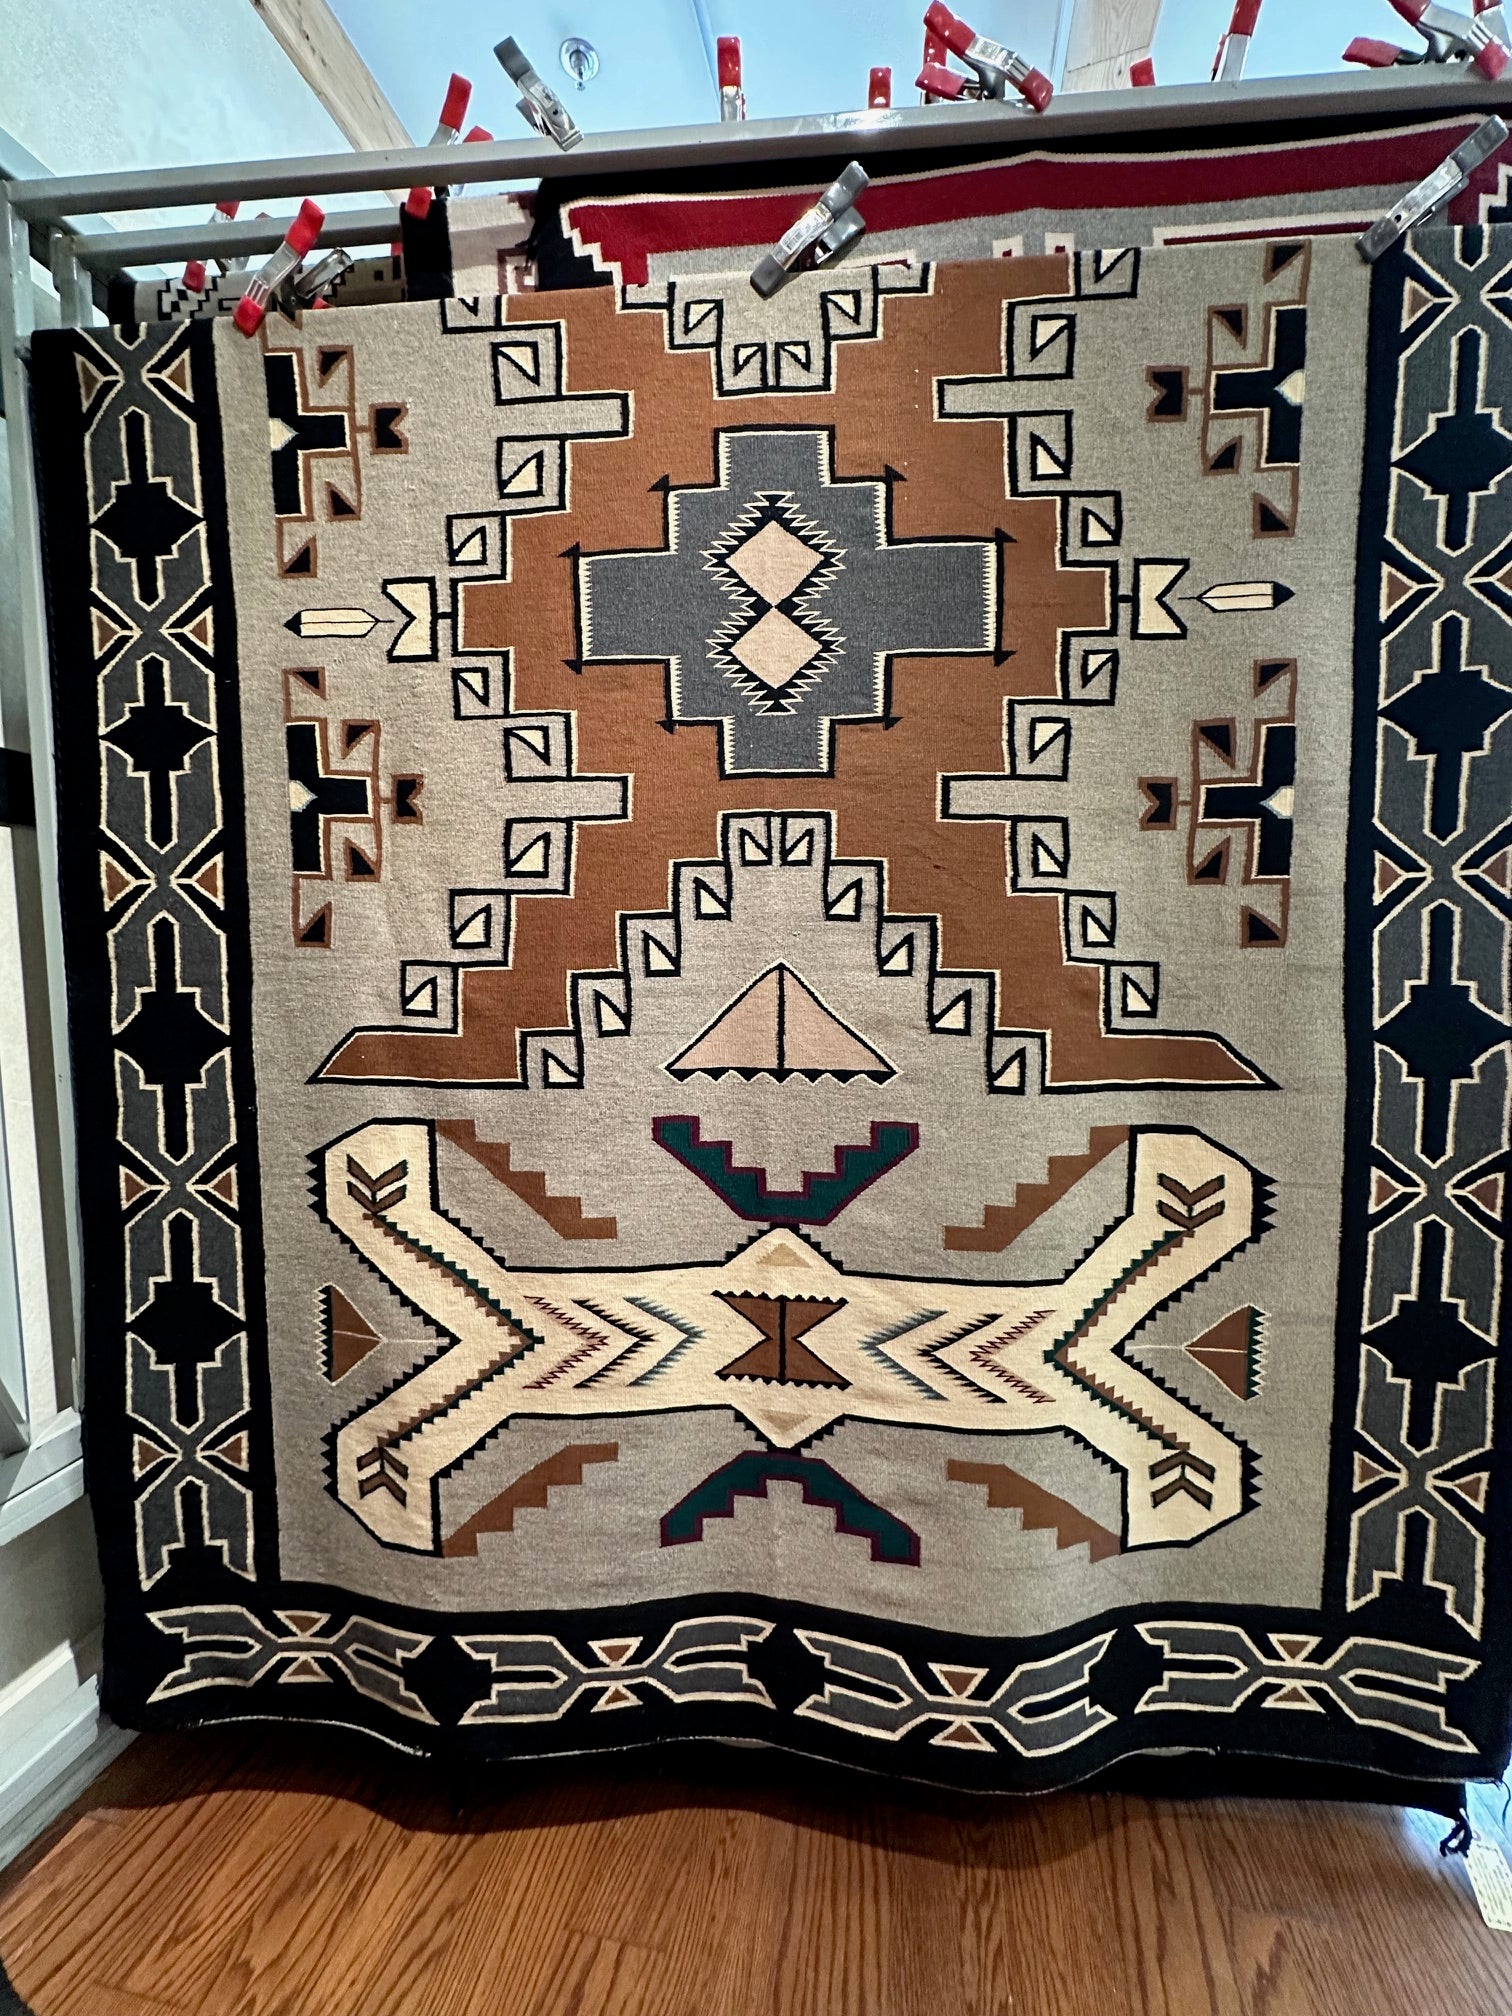 Vintage Teec Nos Pos Navajo Weaving for sale, navajo rug for sale, vintage navajo rugs for sale, telluride gallery